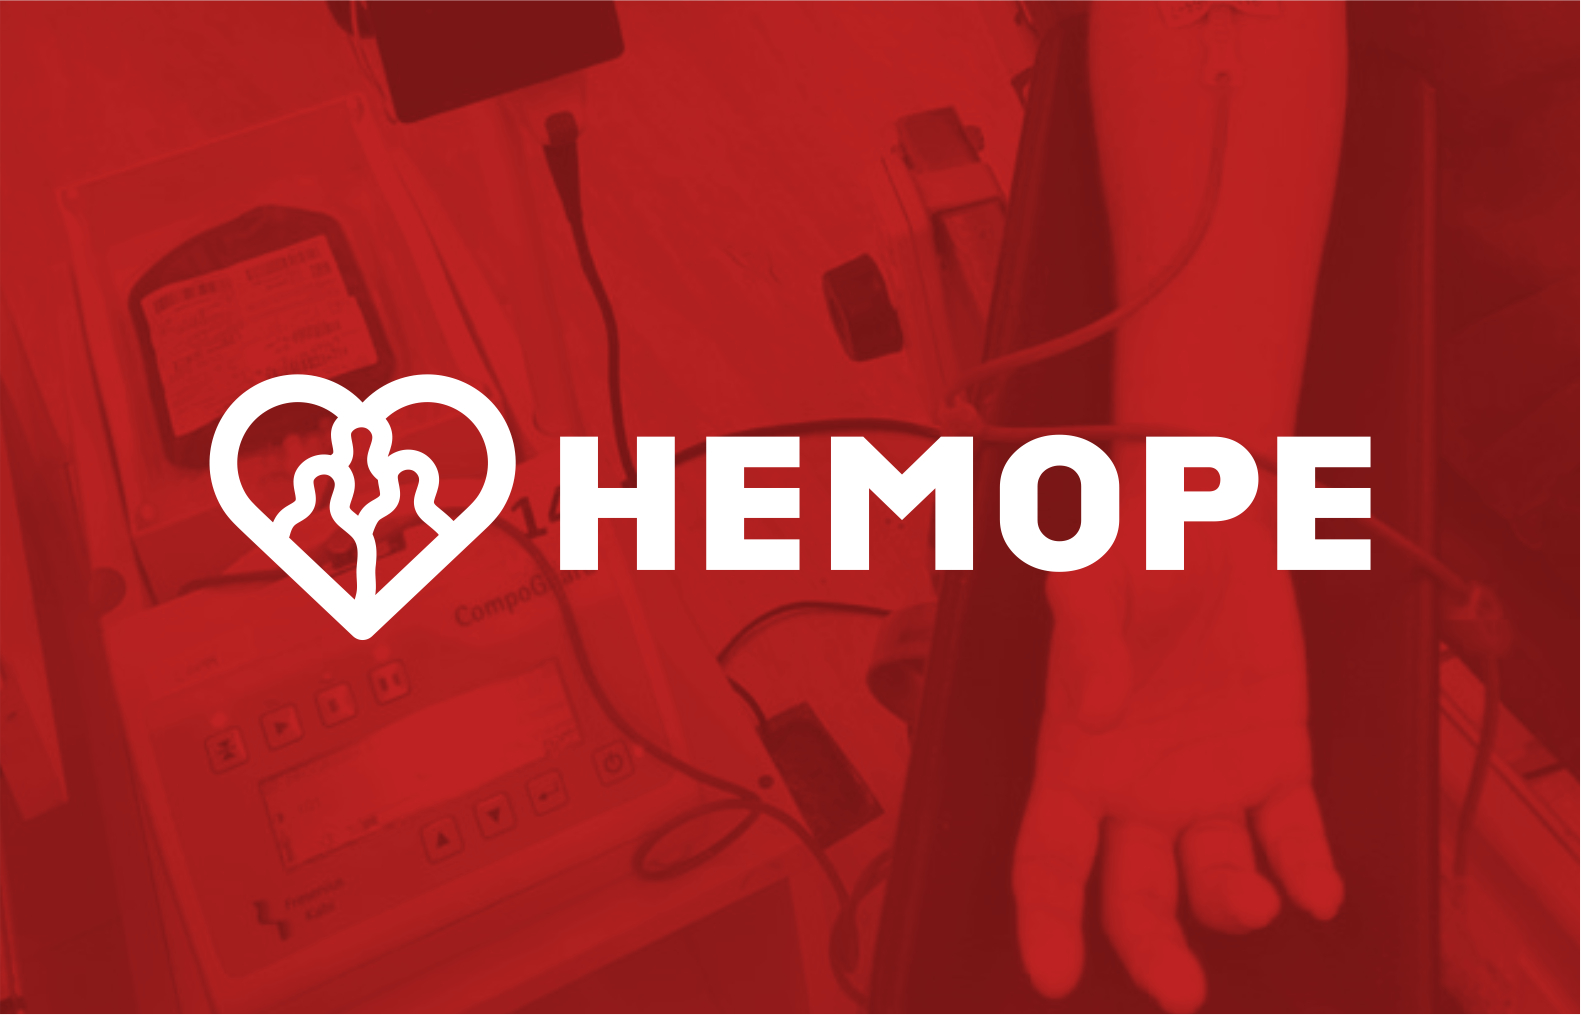 Hemope vagas abertas: inscrições para seleção simplificada. Salários de até R$9,8 mil